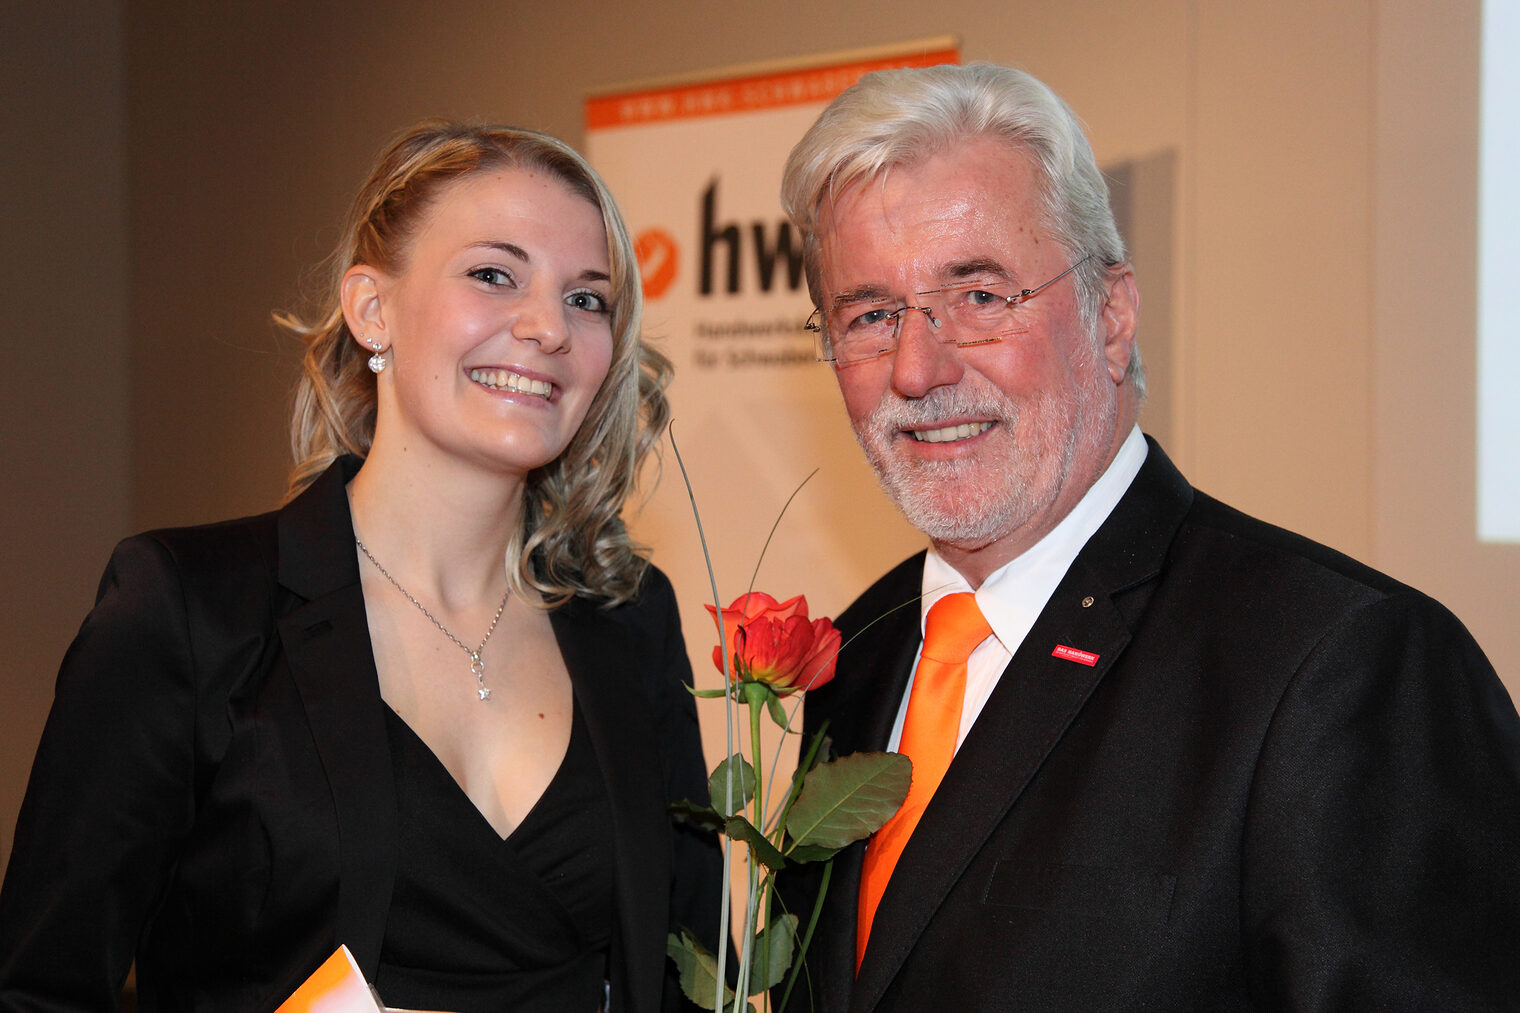 Betriebswirte 2013 - Verena Haslach und Jürgen Schmid